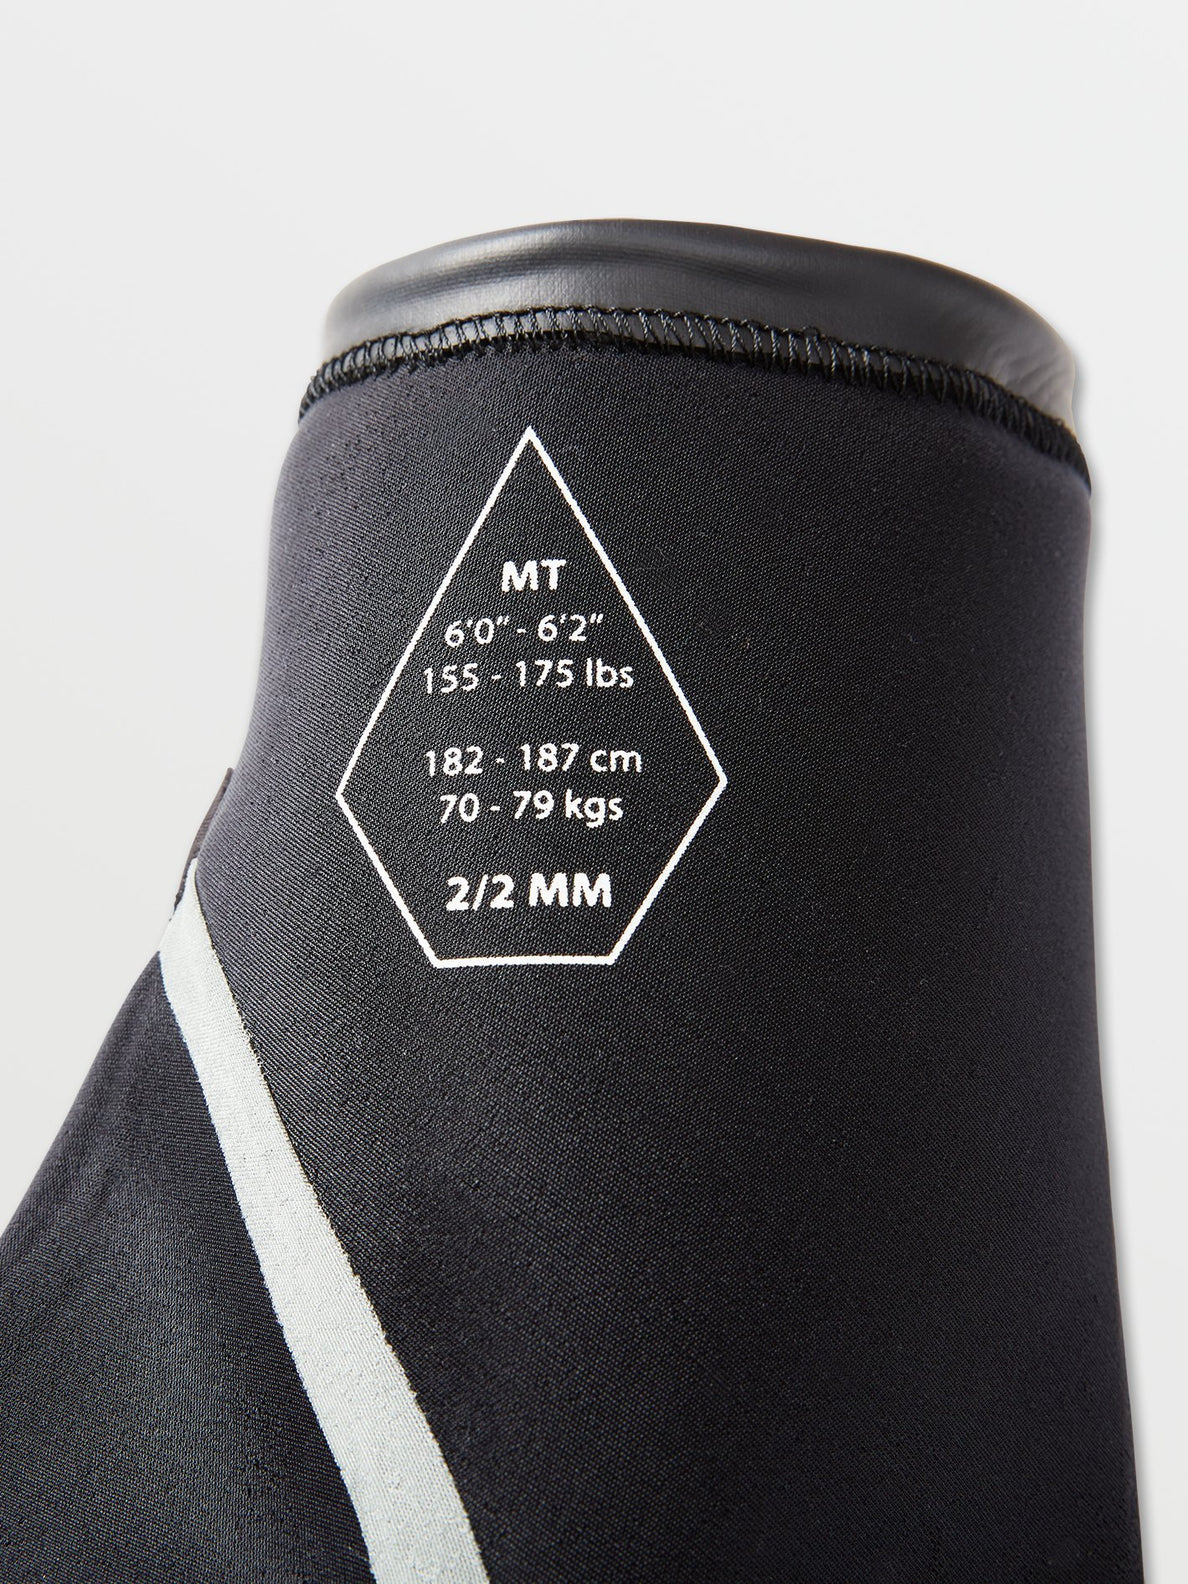 Combinaison Modulator 2/2 mm de mi-saison à manches courtes et zip poitrine - BLACK